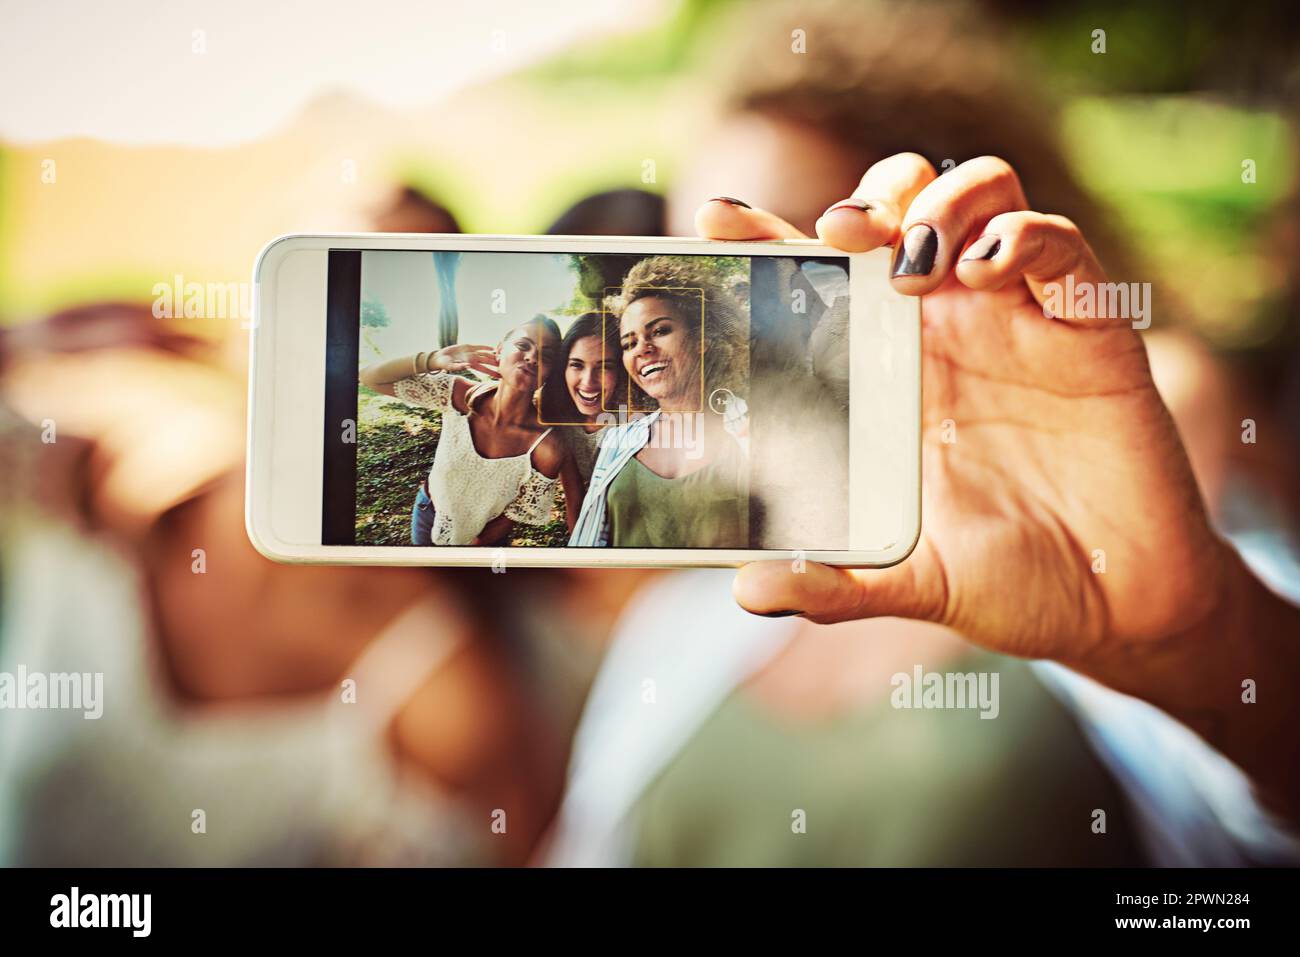 La nostra amicizia è da custodire per la vita. un gruppo di amici che prendono un selfie insieme all'aperto Foto Stock